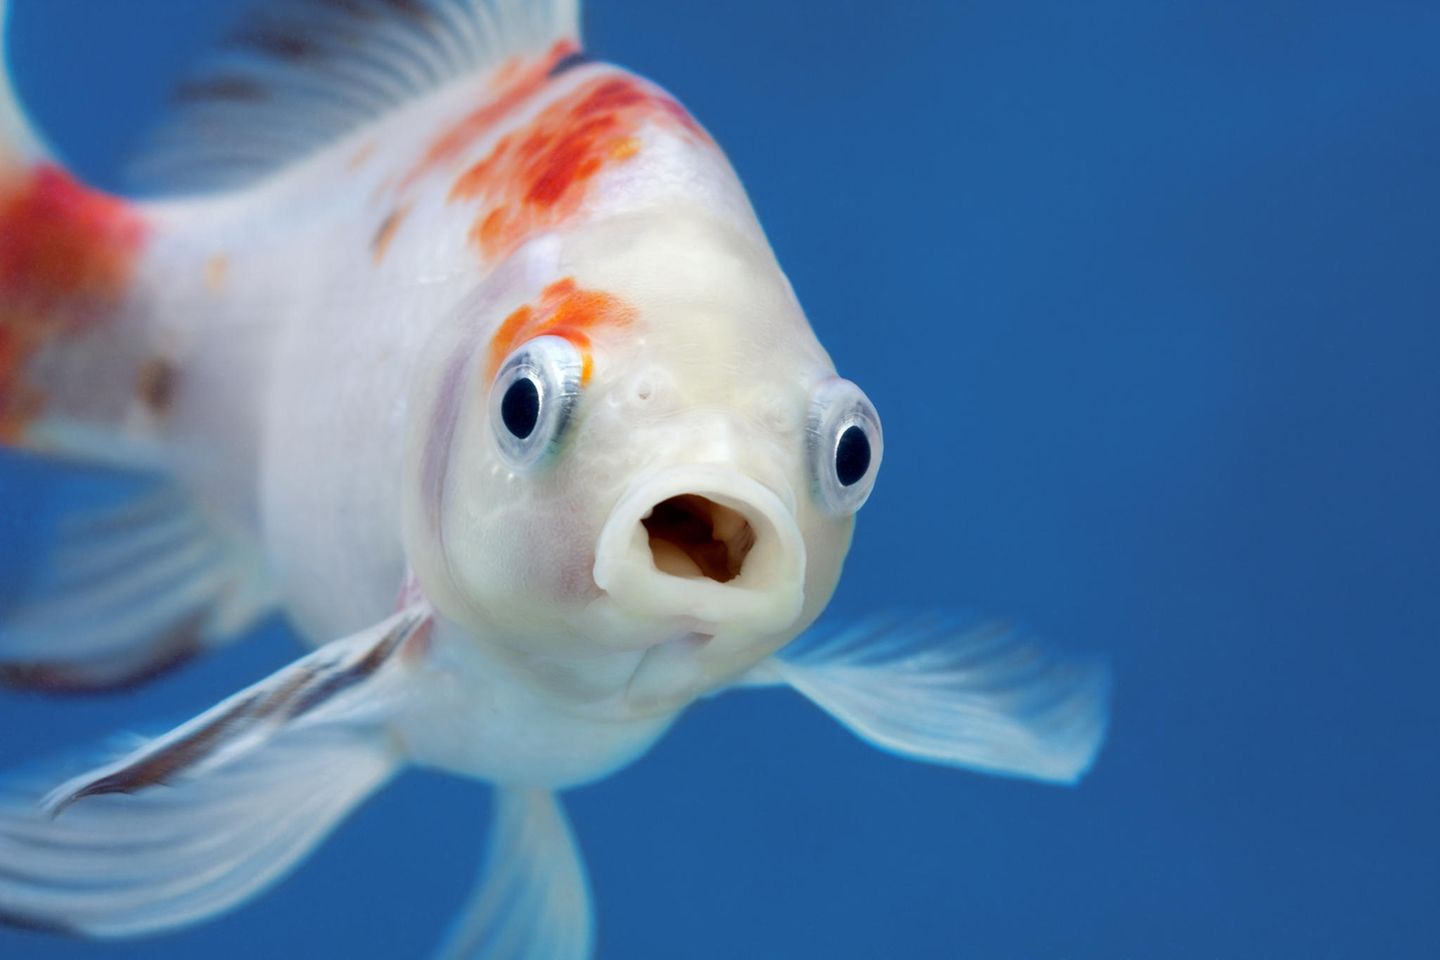 Physik im Alltag: Warum können Fische unter Wasser atmen?